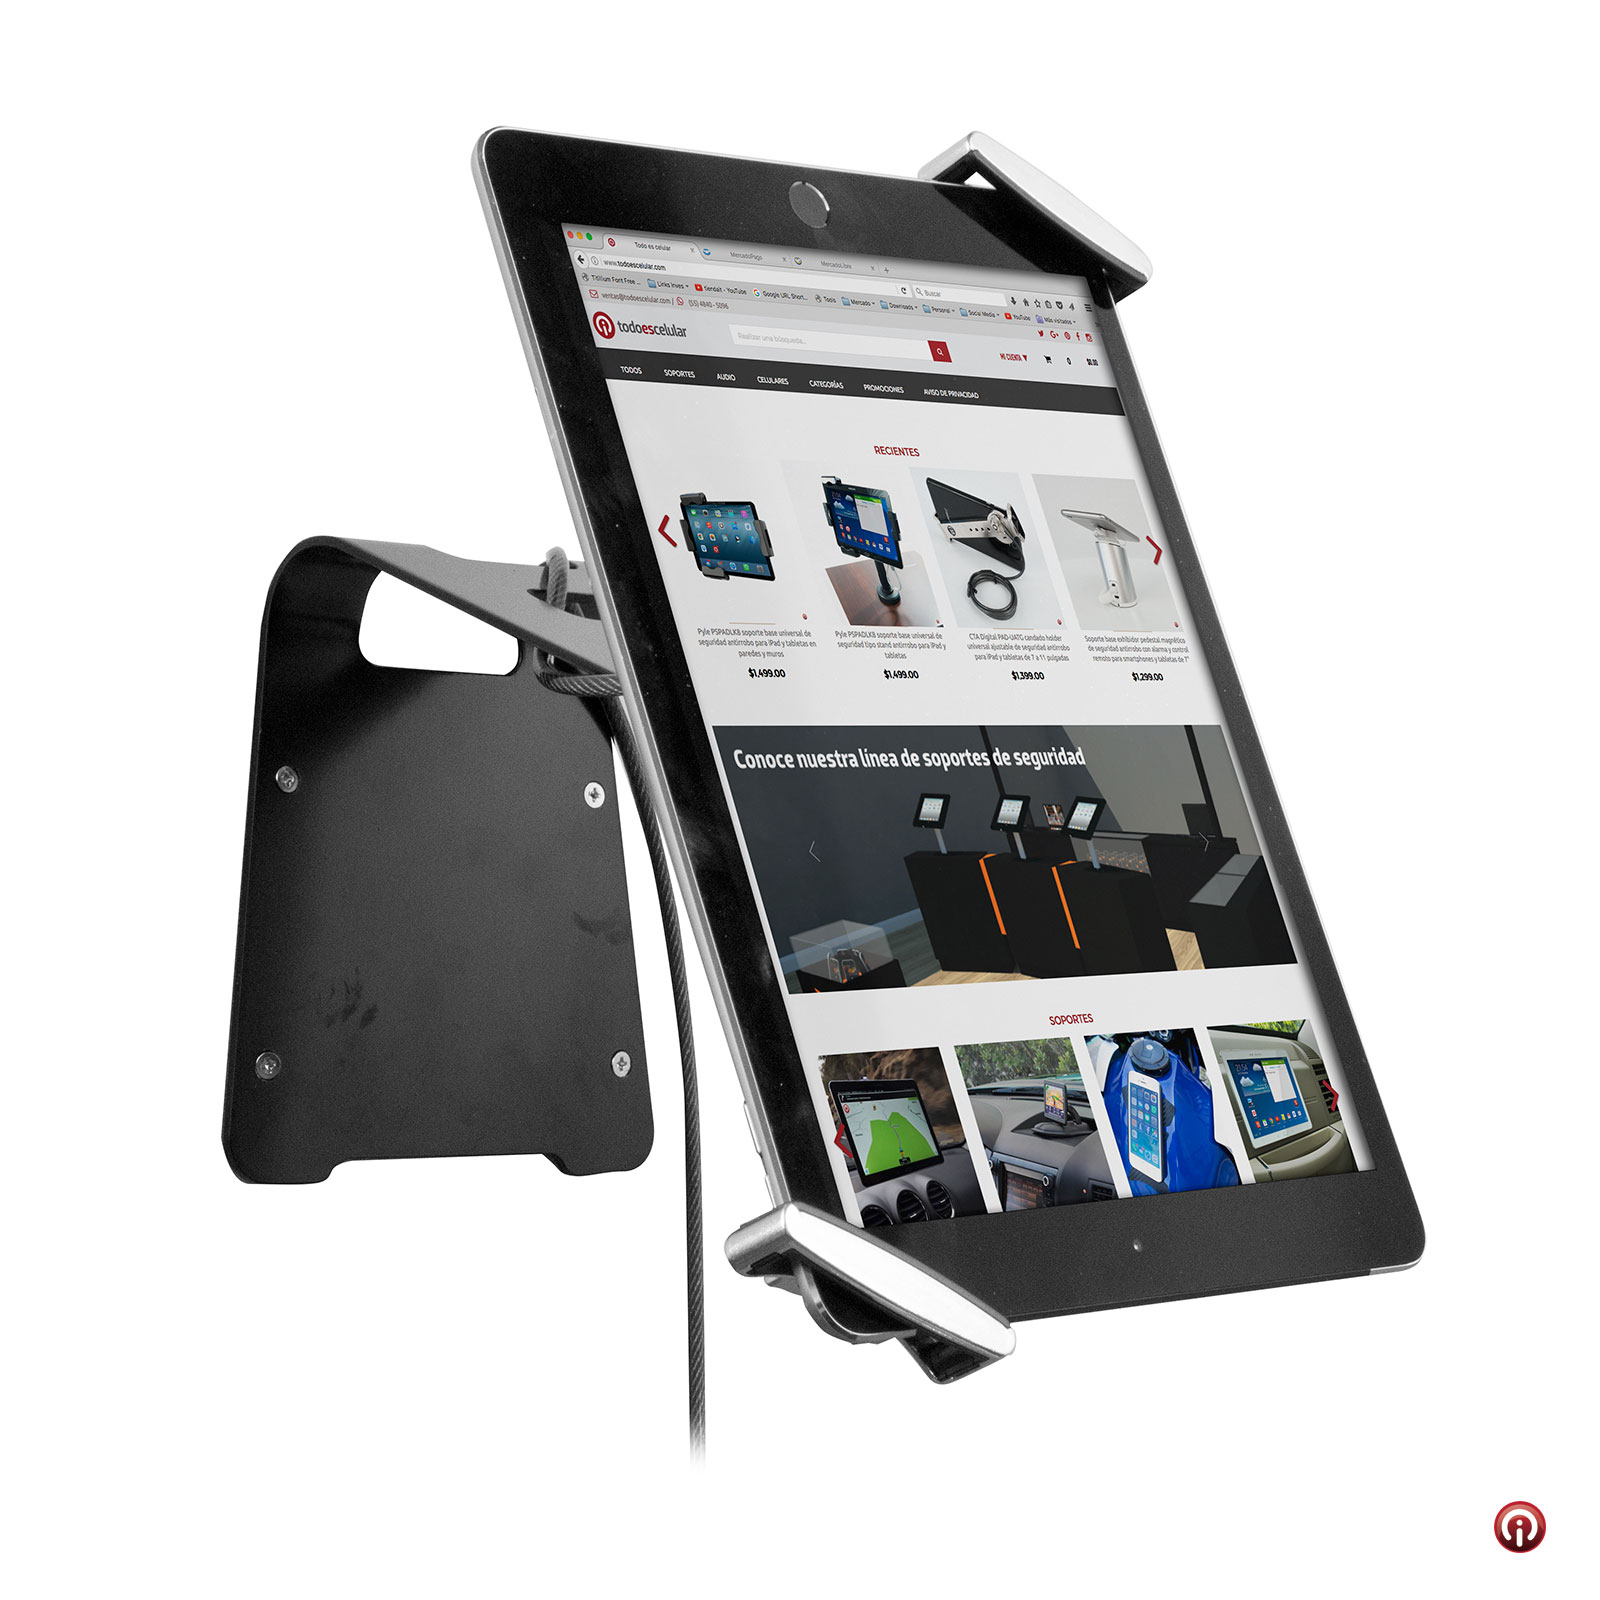 TSCSCS soporte de seguridad antirrobo para iPad Air,Pro 9.7, iPad 5 y 6